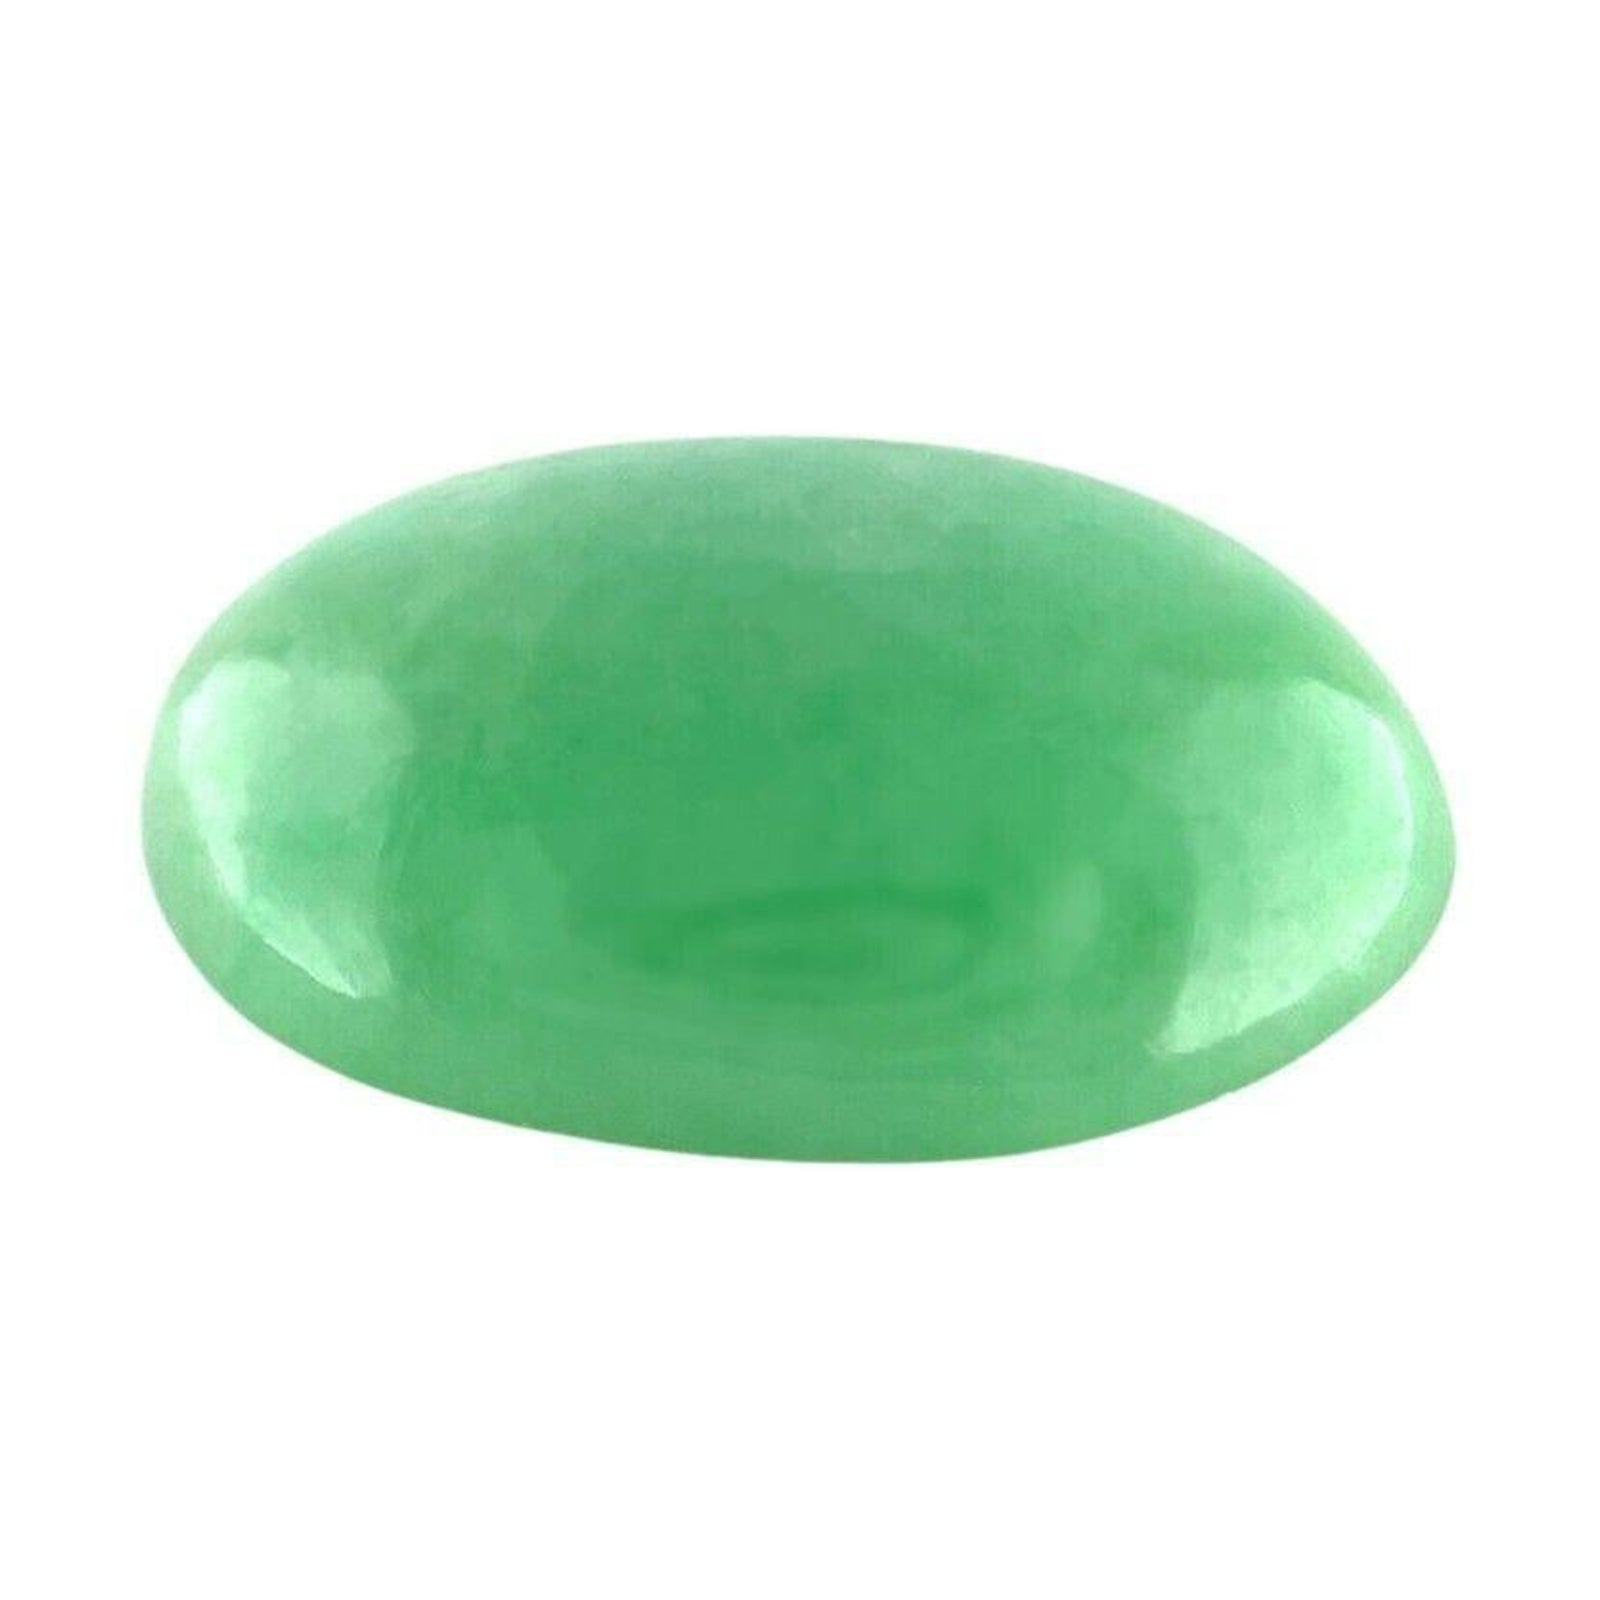 Rare 4.21ct IGI Certified Green Jadeite Jade 'A' Grade Oval Cabochon Loose Gem en vente